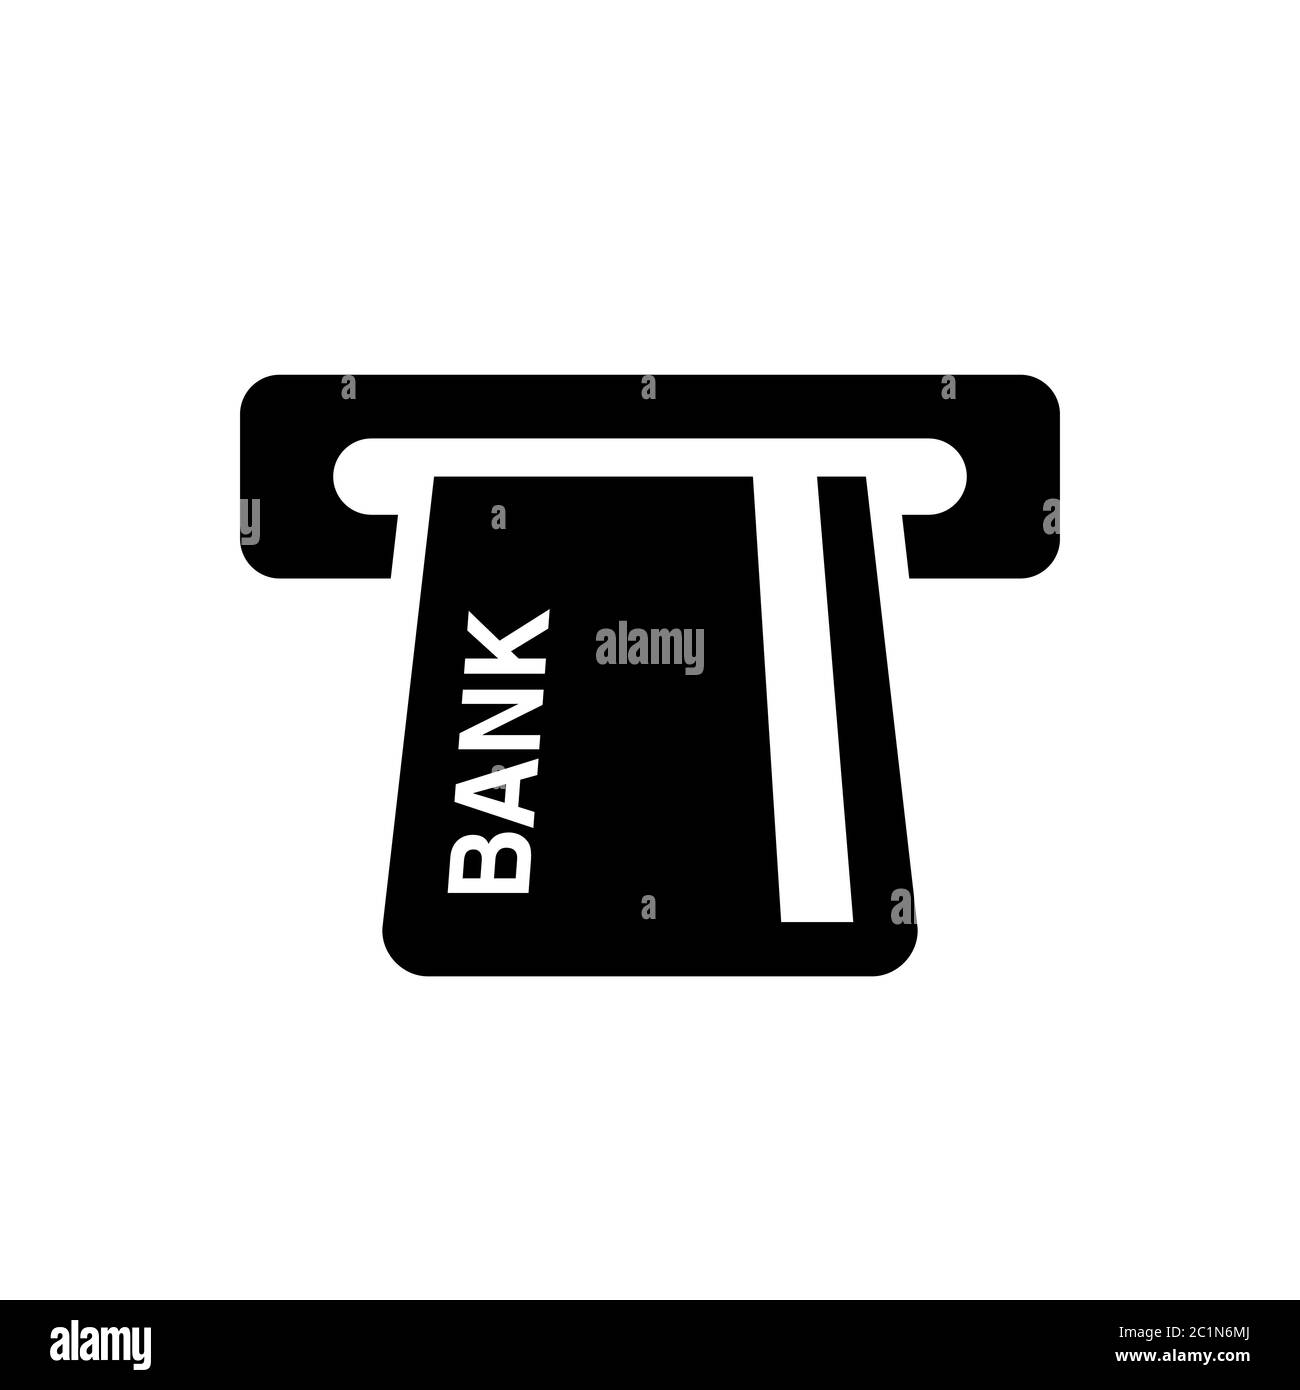 Symbol Symbole des Geldautomaten mit Kreditkarten. Element der Banktechnologie Gerät. Kreditkarte in Geldautomaten geladen. Stock Vektor